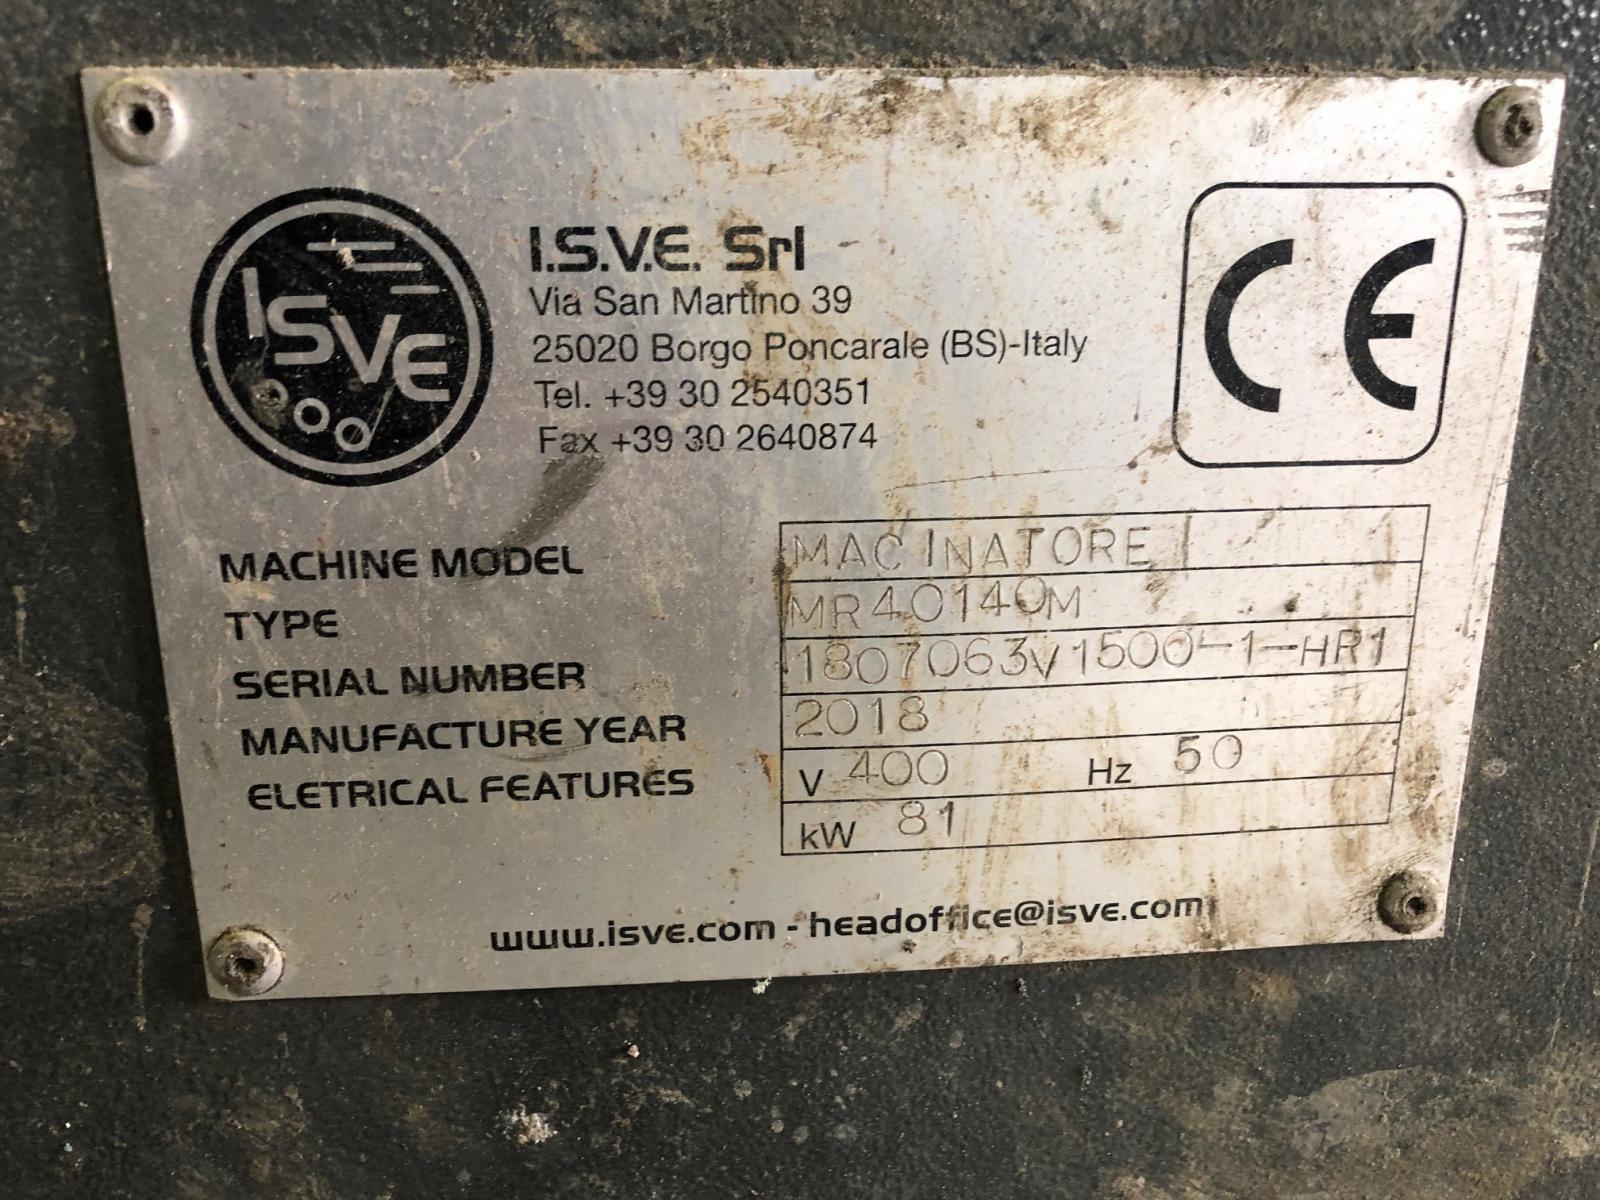 trituratore usata di marca Isve modello MR40140M